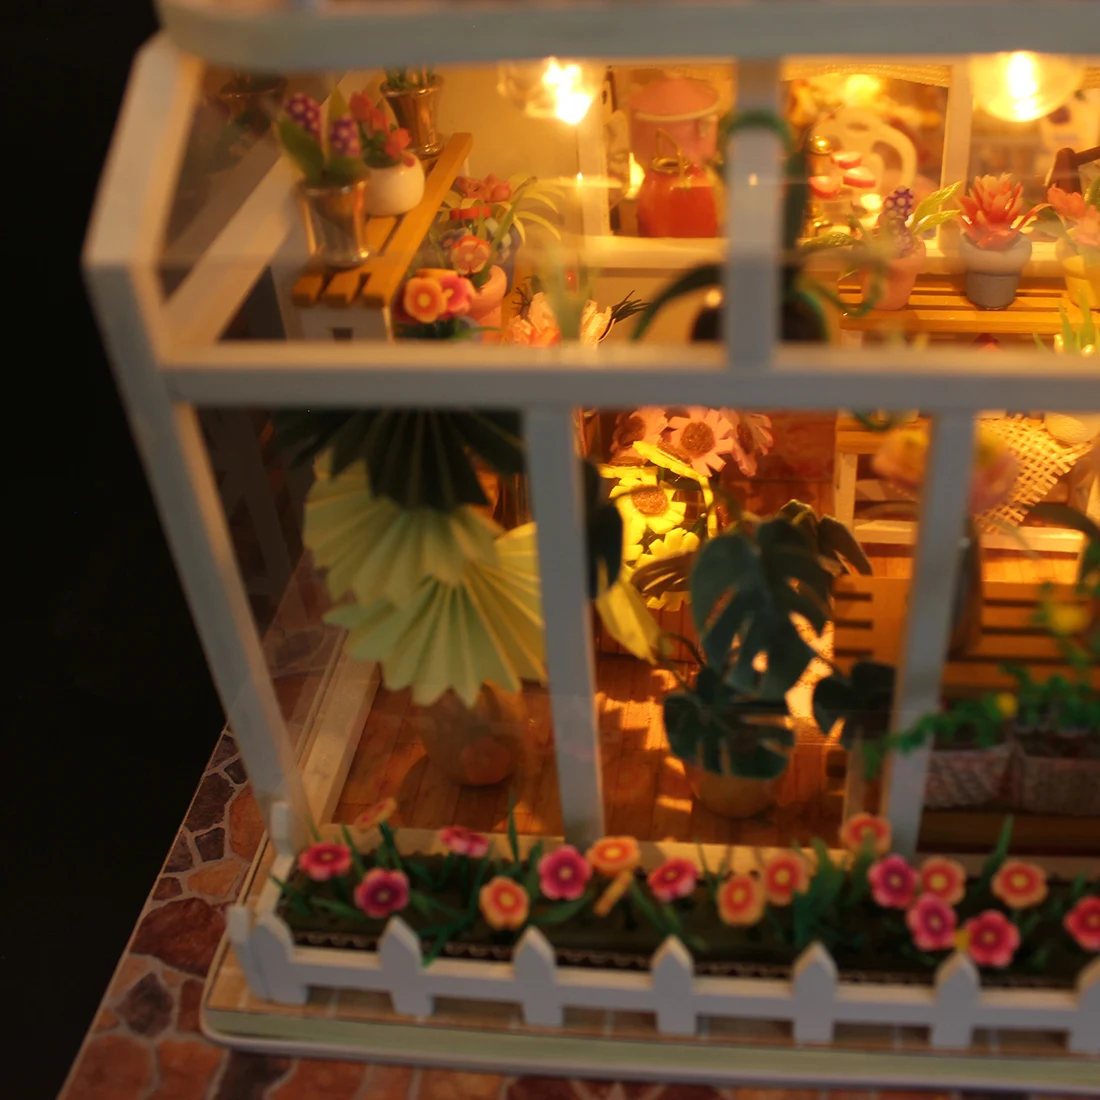 Сделай Сам деревянная Сборная модель кабины развивающие игрушки со светом и музыкой для детей-весь путь